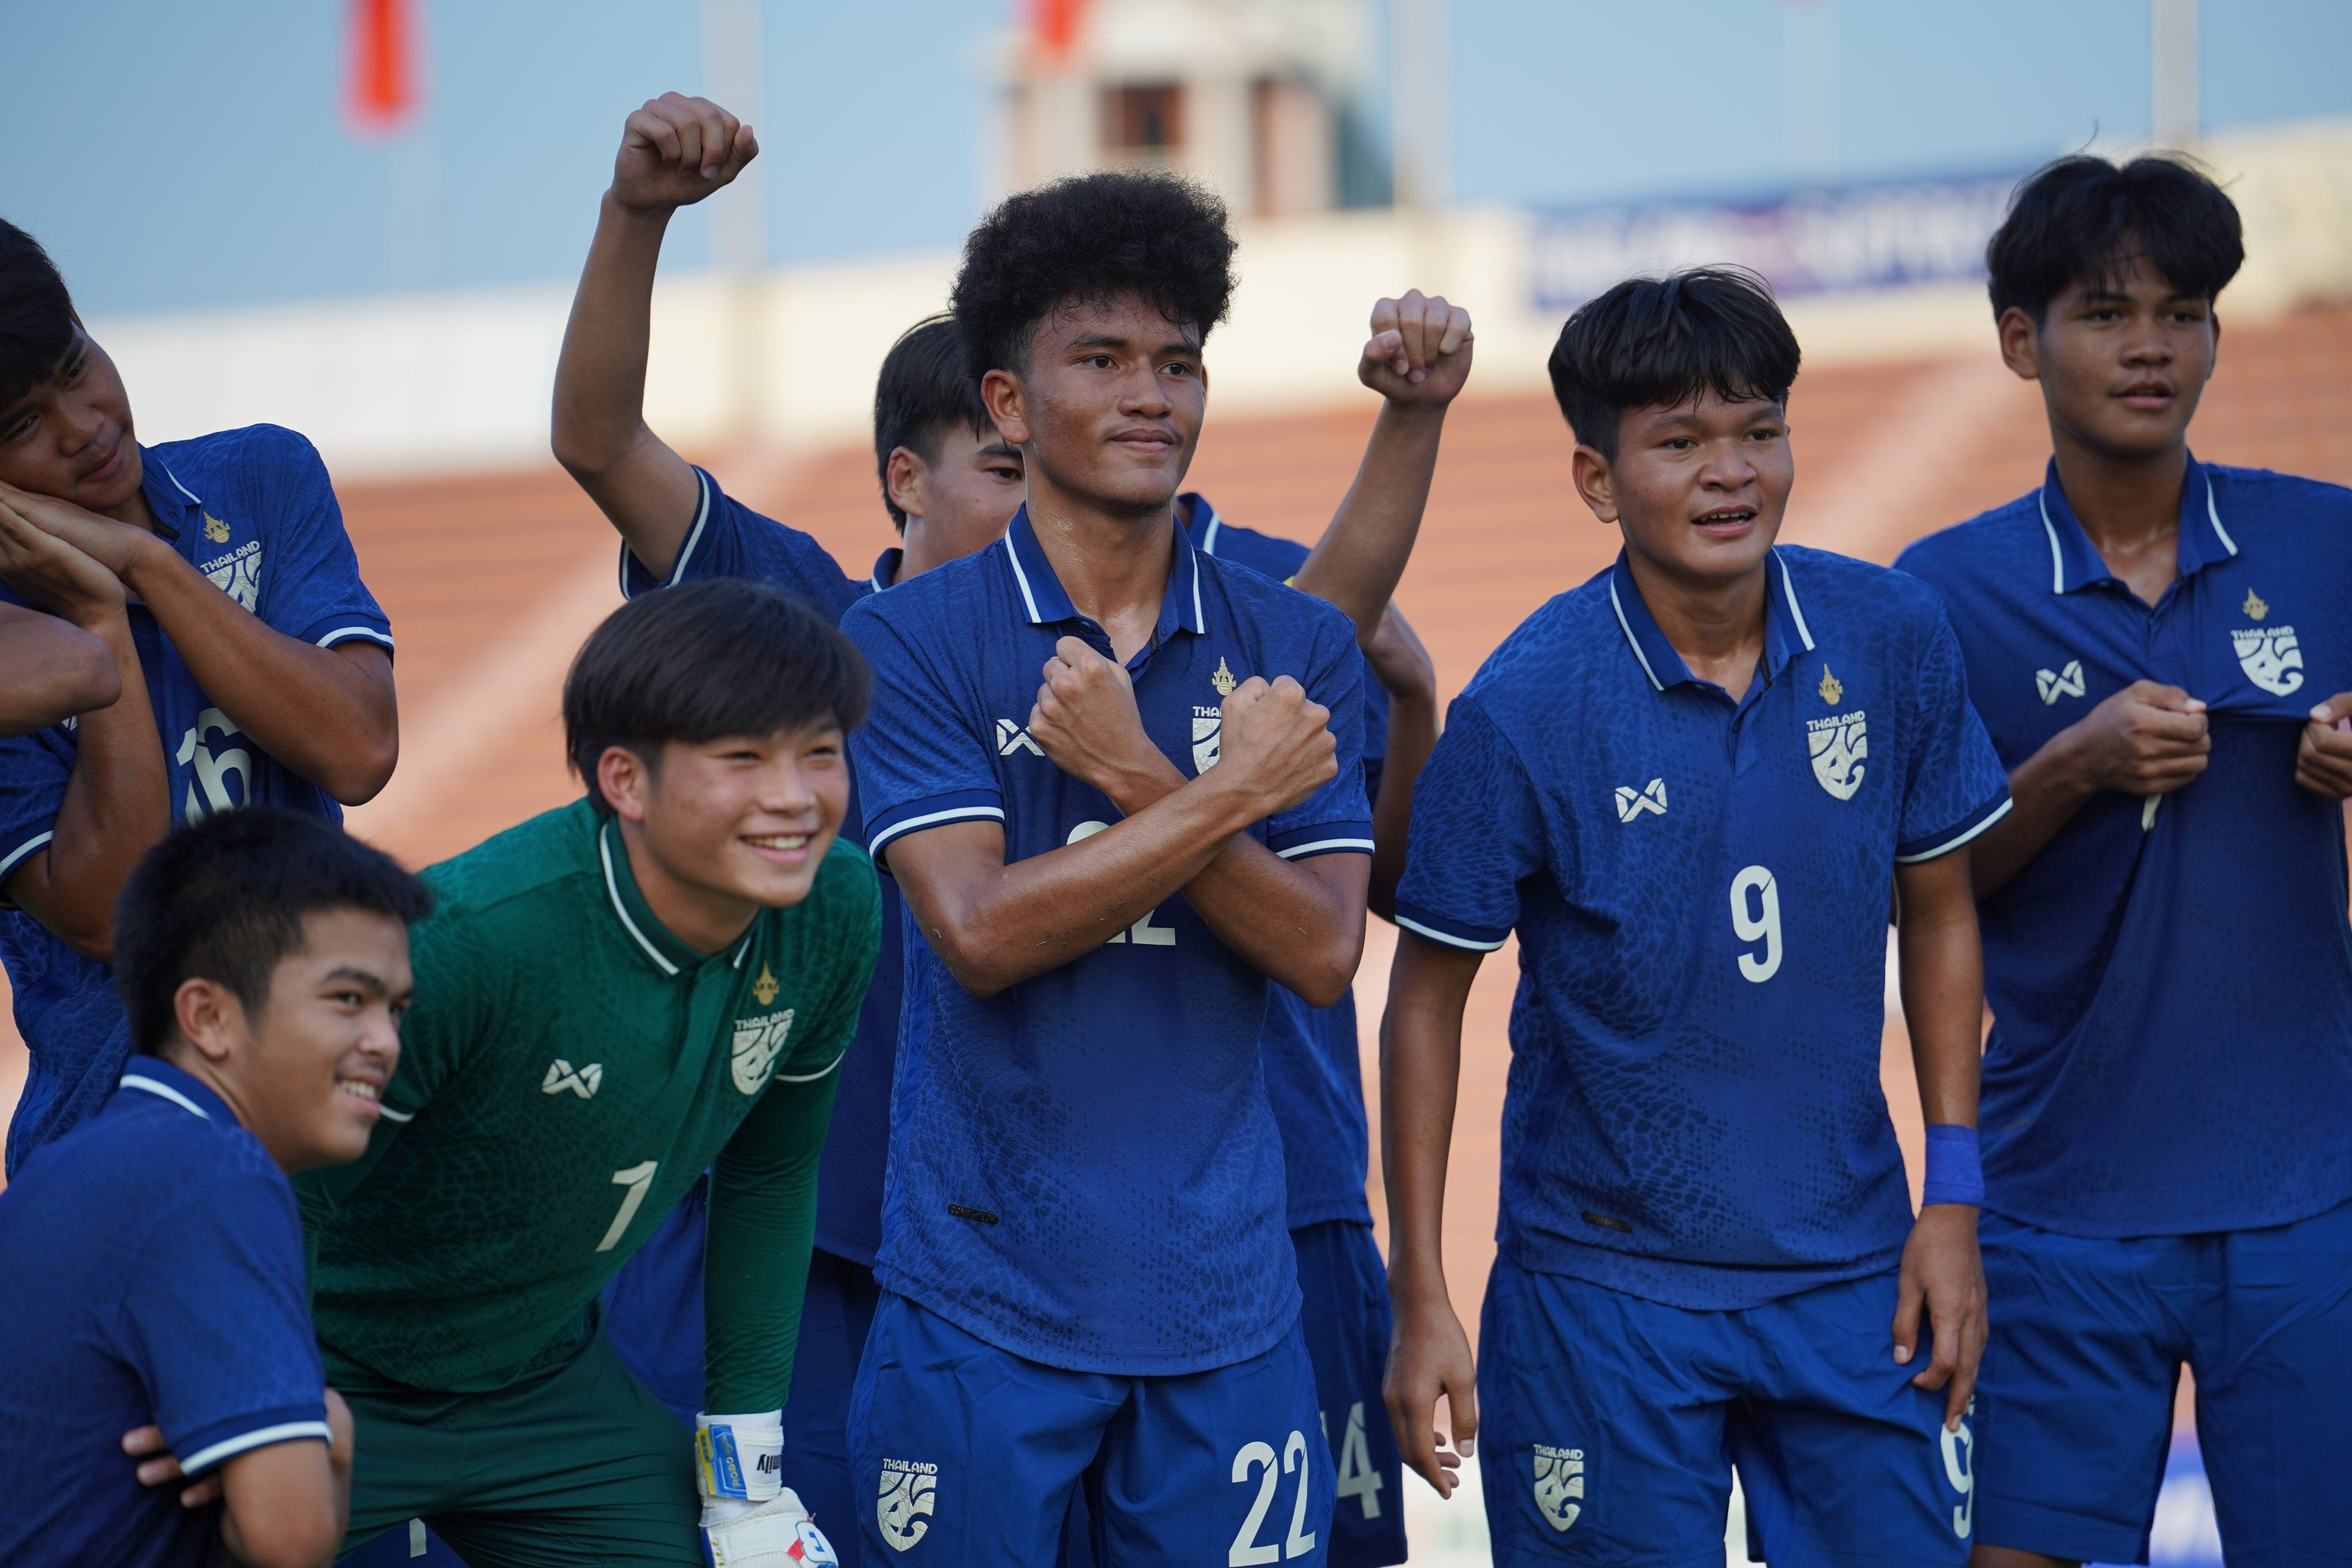 Thắng dễ Nepal, U17 Thái Lan gửi lời thách thức đến U17 Việt Nam